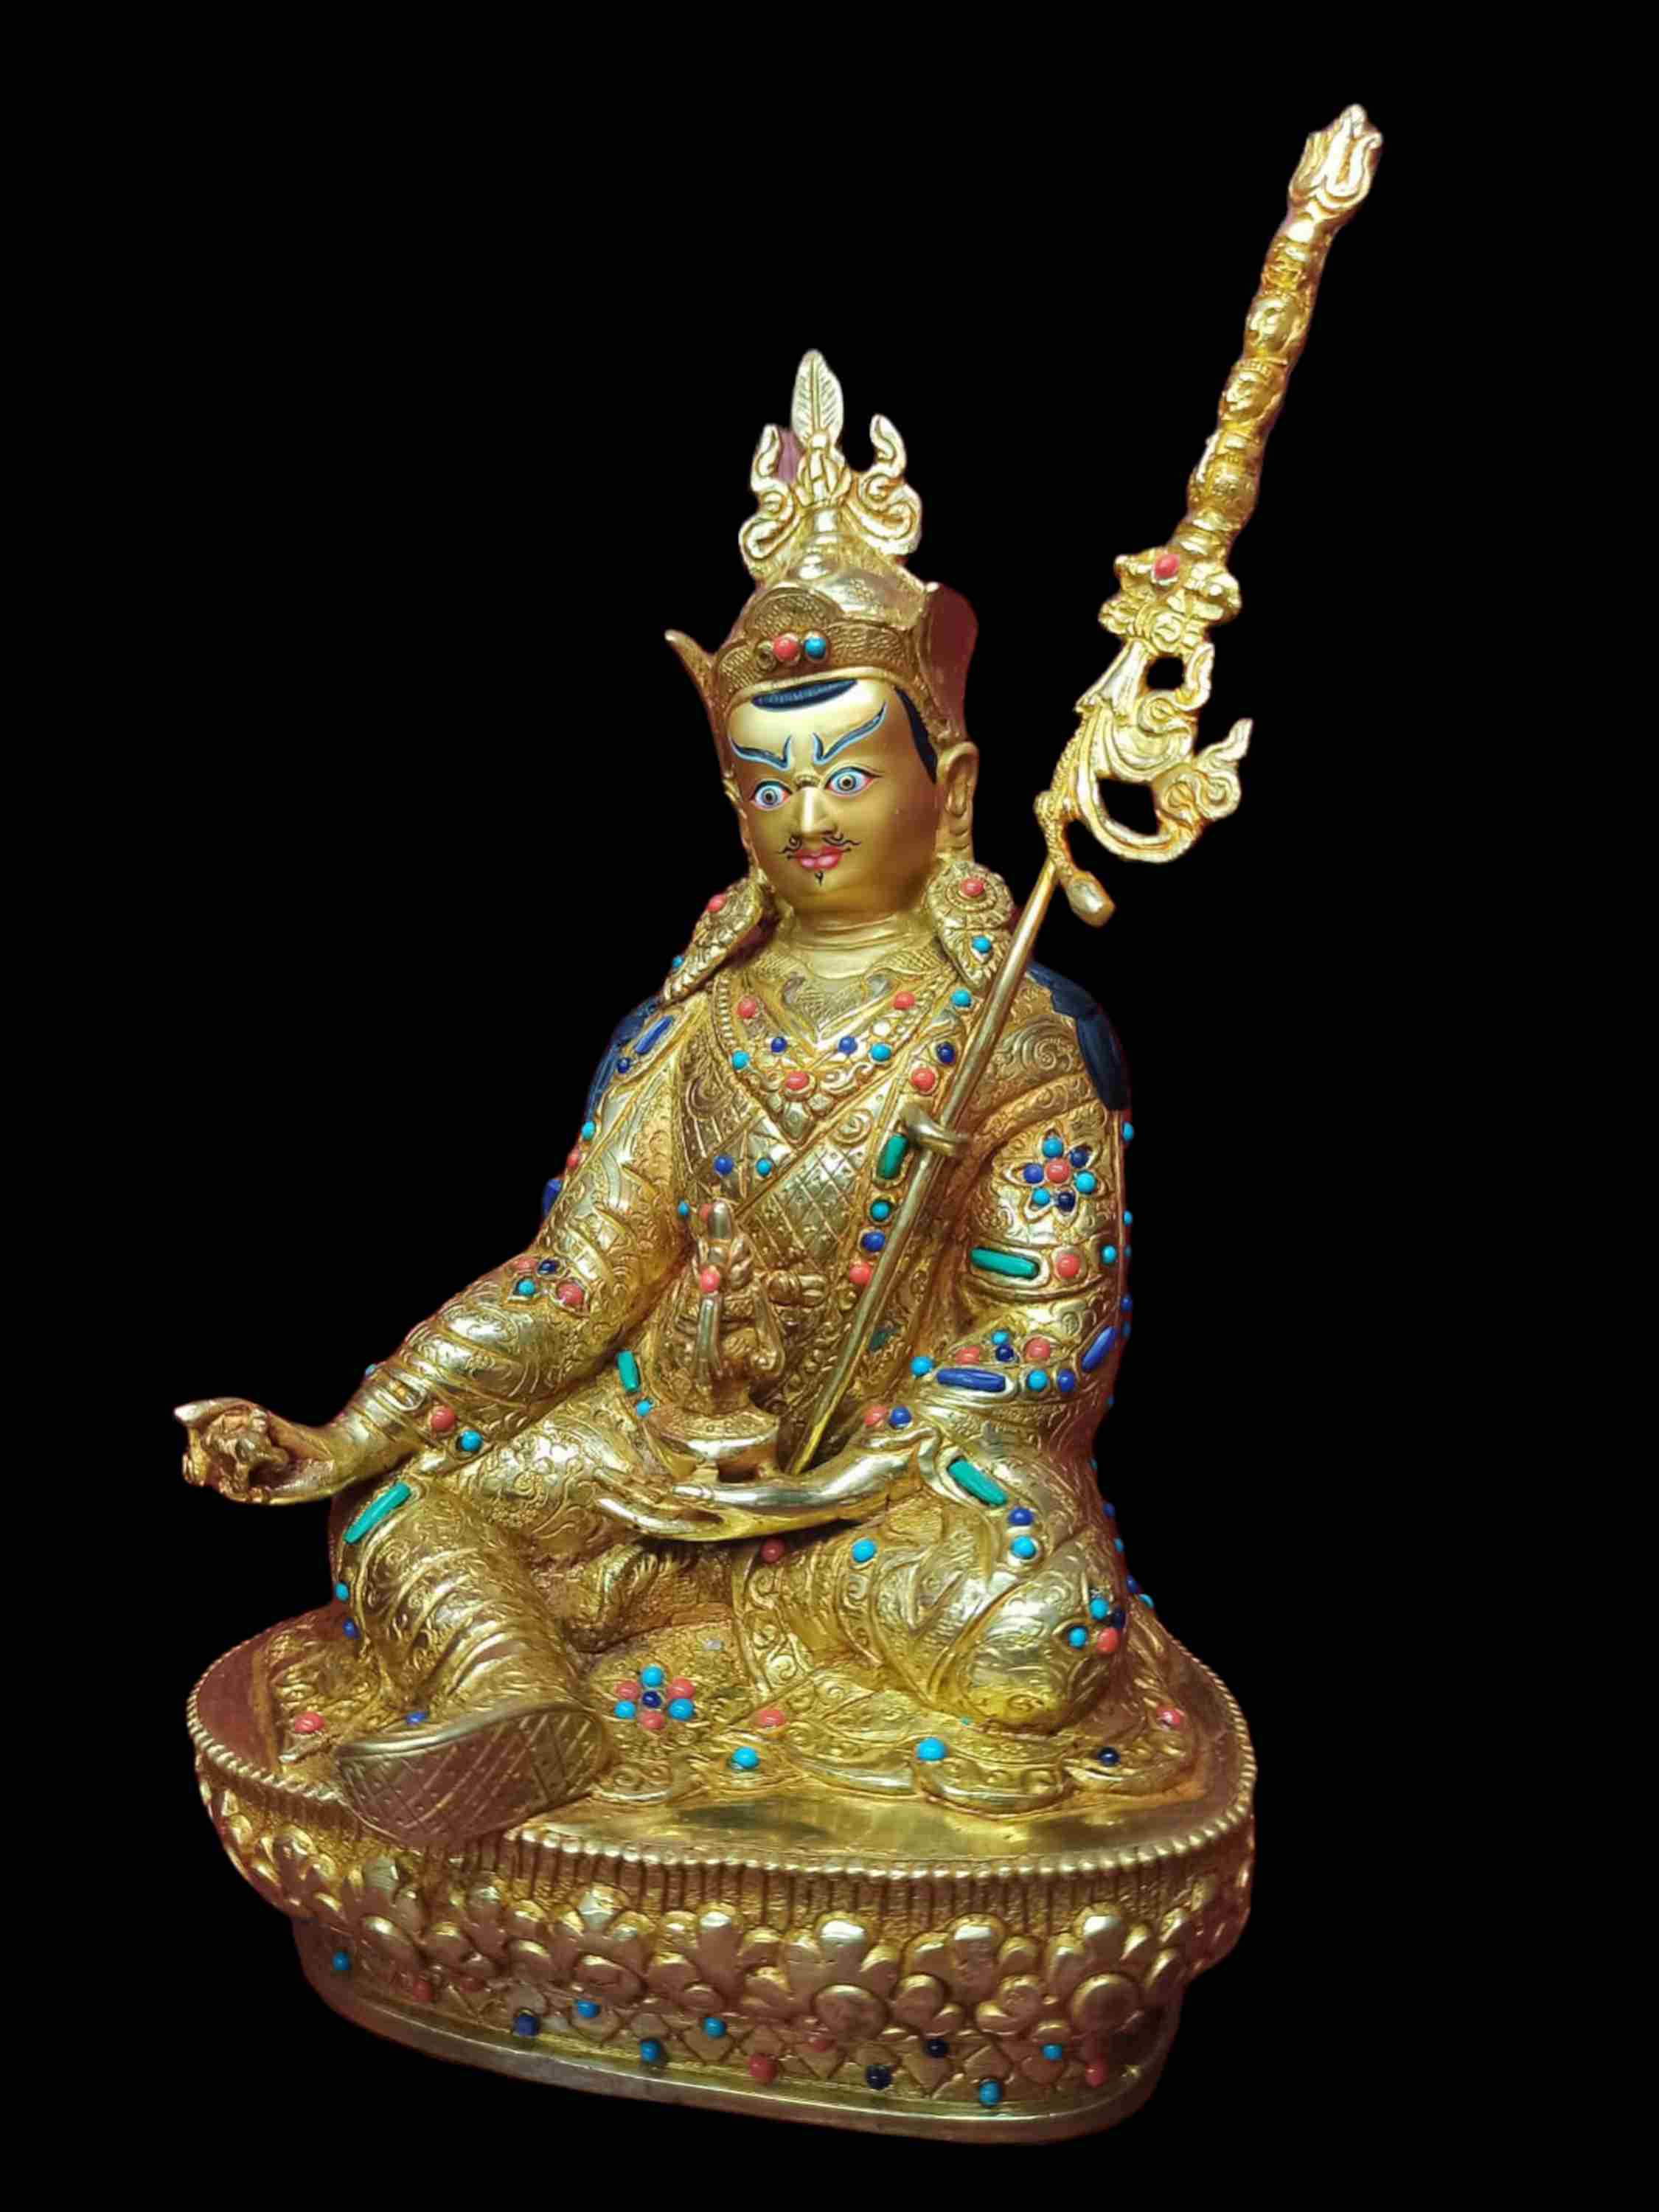 Buddhist Handmade Statue Of Padmasambhava guru Rinpoche, full Fire Gold Plated, Stone Setting, Face Painted